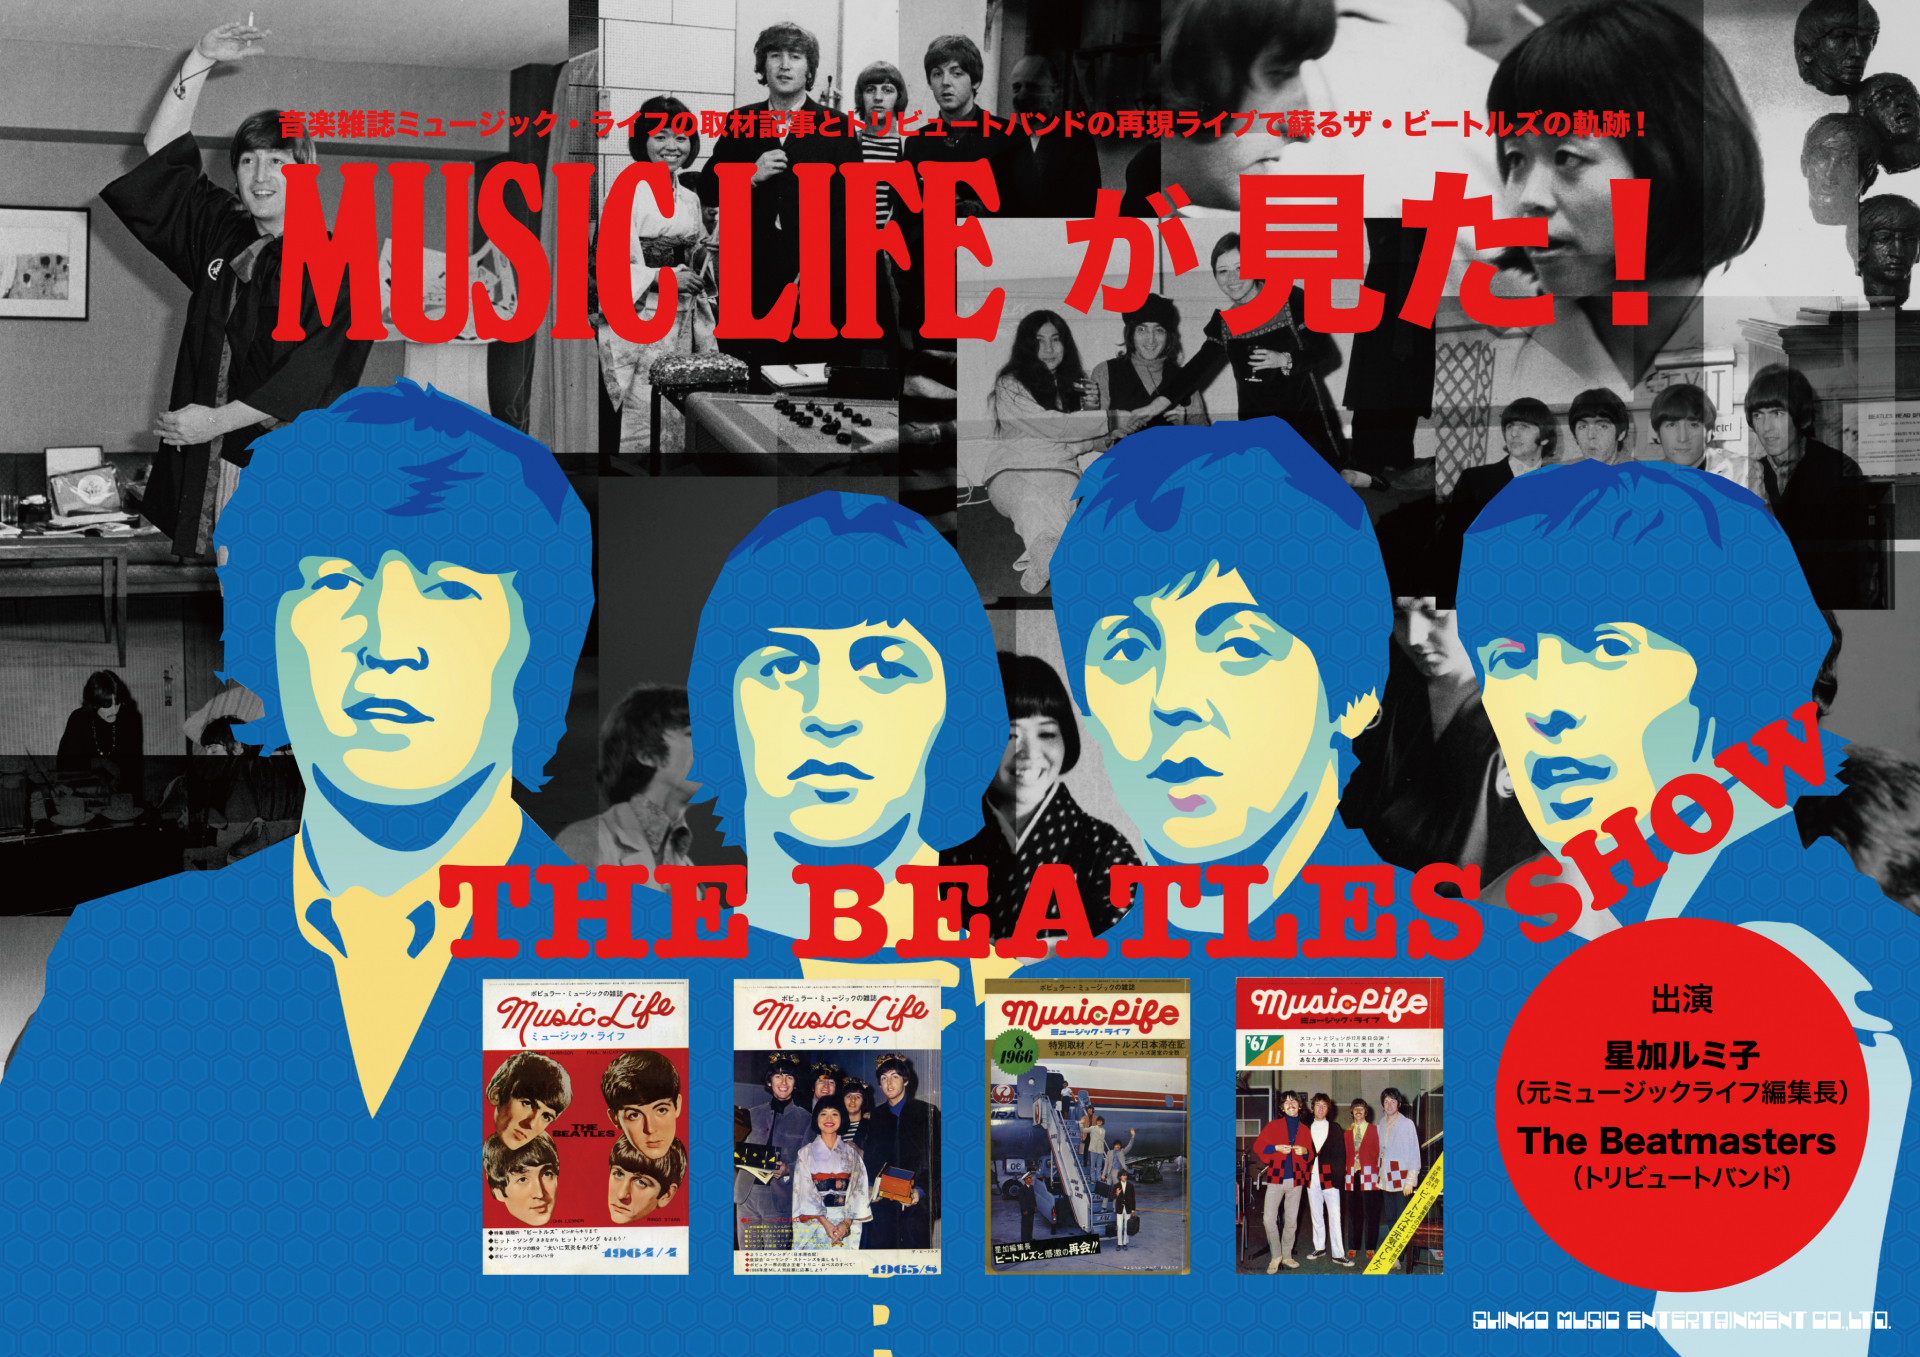 音楽雑誌ミュージックライフの取材記事とトリビュートバンドの再現ライブで蘇る！ザ・ビートルズの軌跡！“MUSIC LIFEが見た！The Beatles Show”開催が決定！